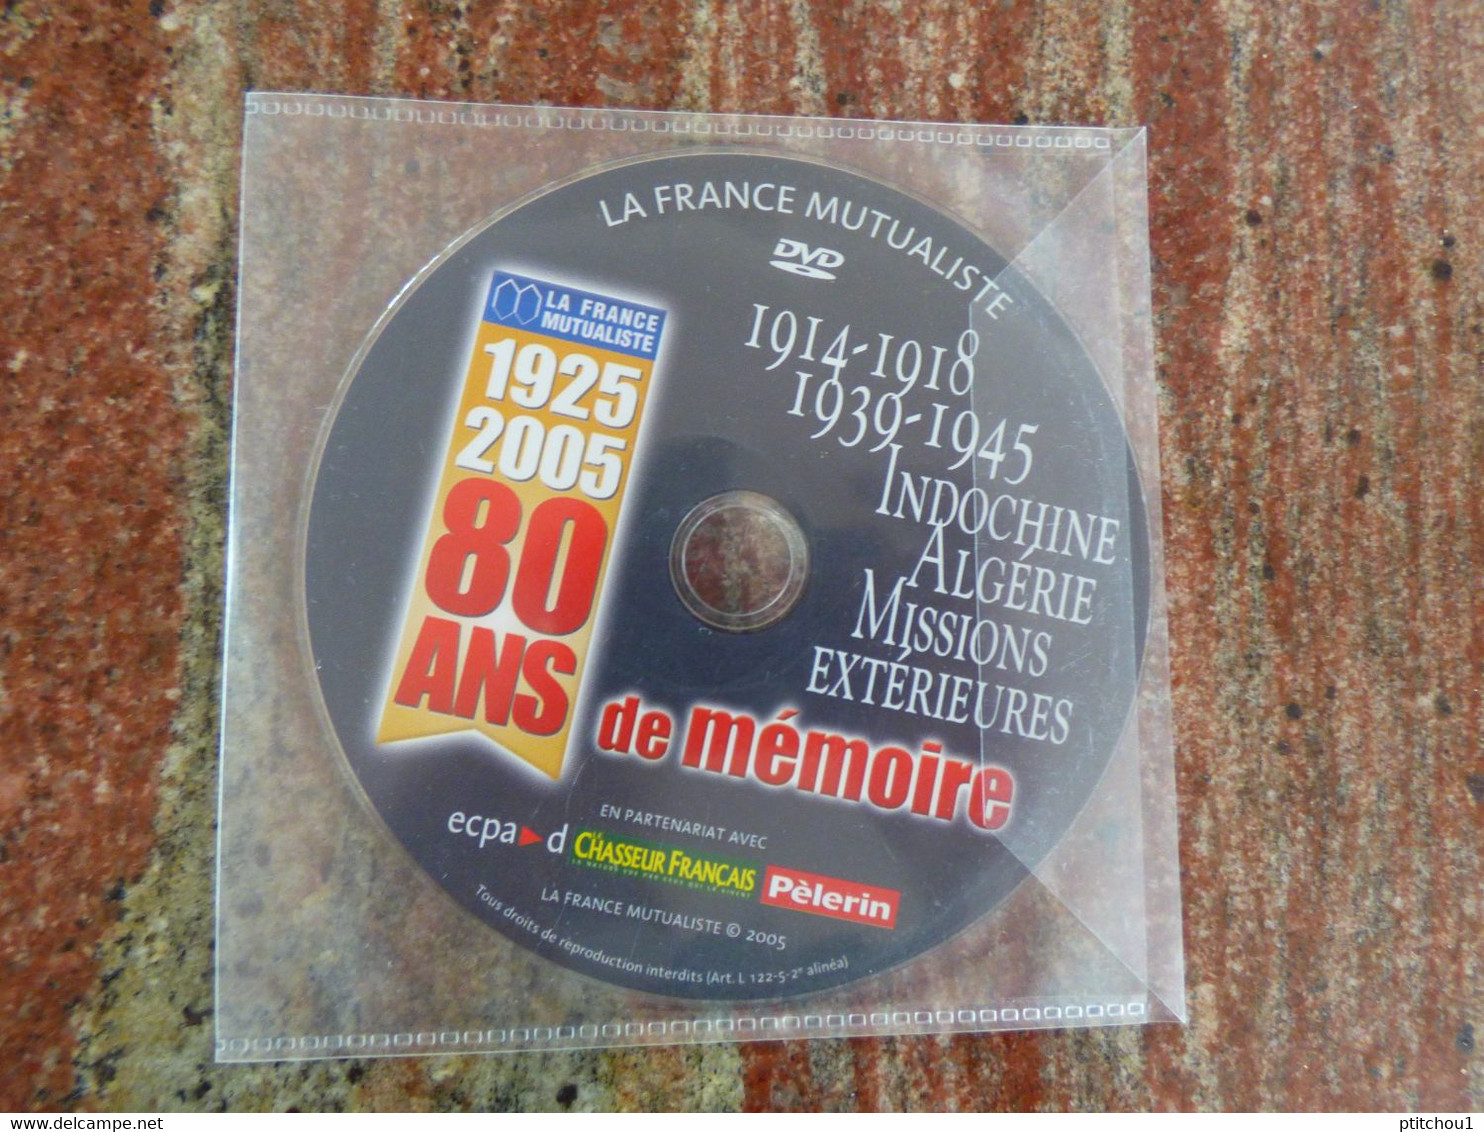 LA FRANCE MUTUALISTE 1925-2005 80 Ans De Mémoire 14-18, 39-45, Indochine, Algérie, Missions Extérieures - Documentary